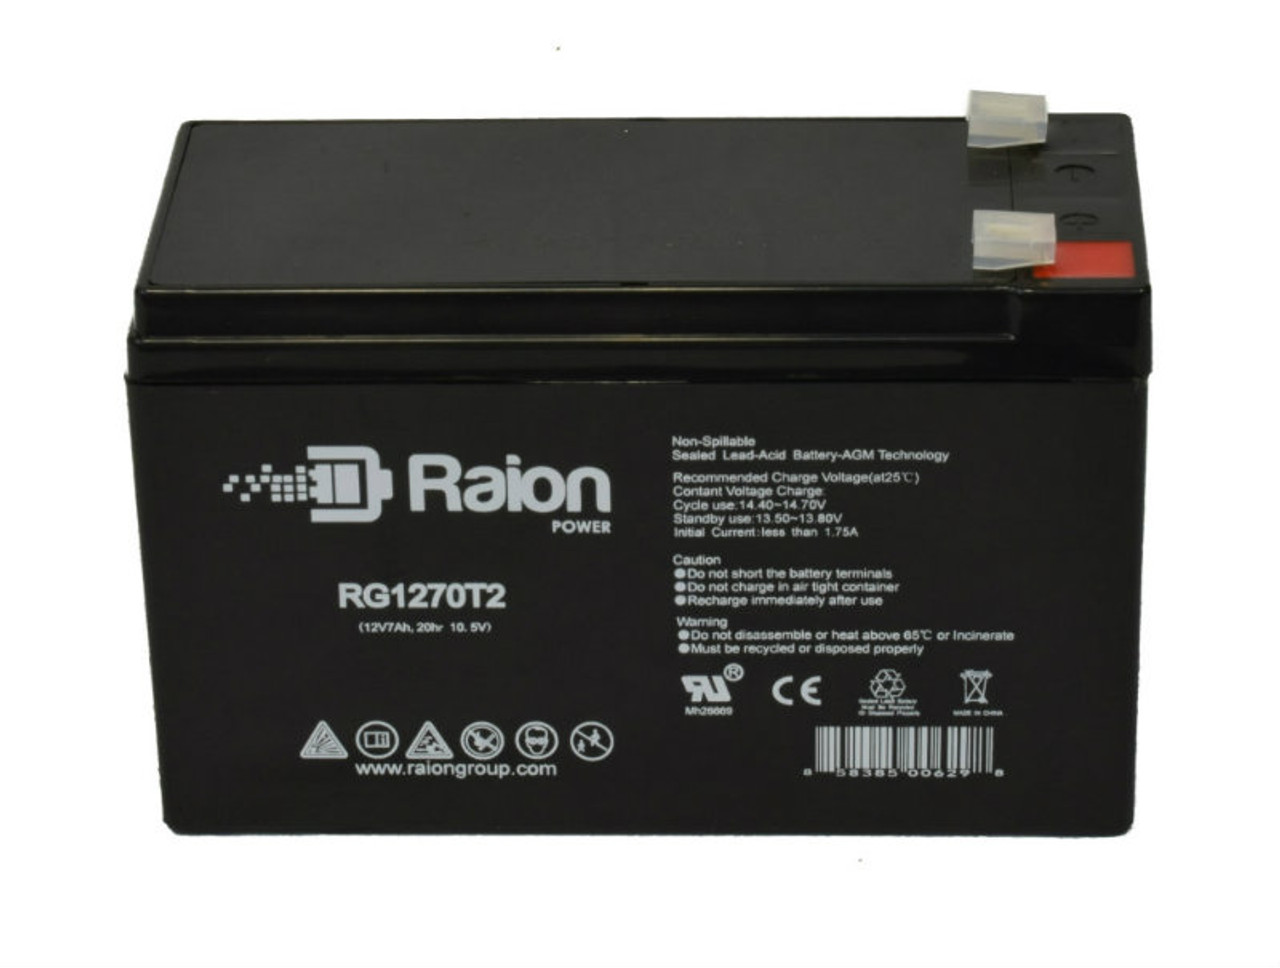 Raion Power RG1270T1 12V 7Ah Lead Acid Battery for Otolift ONE Stairlift